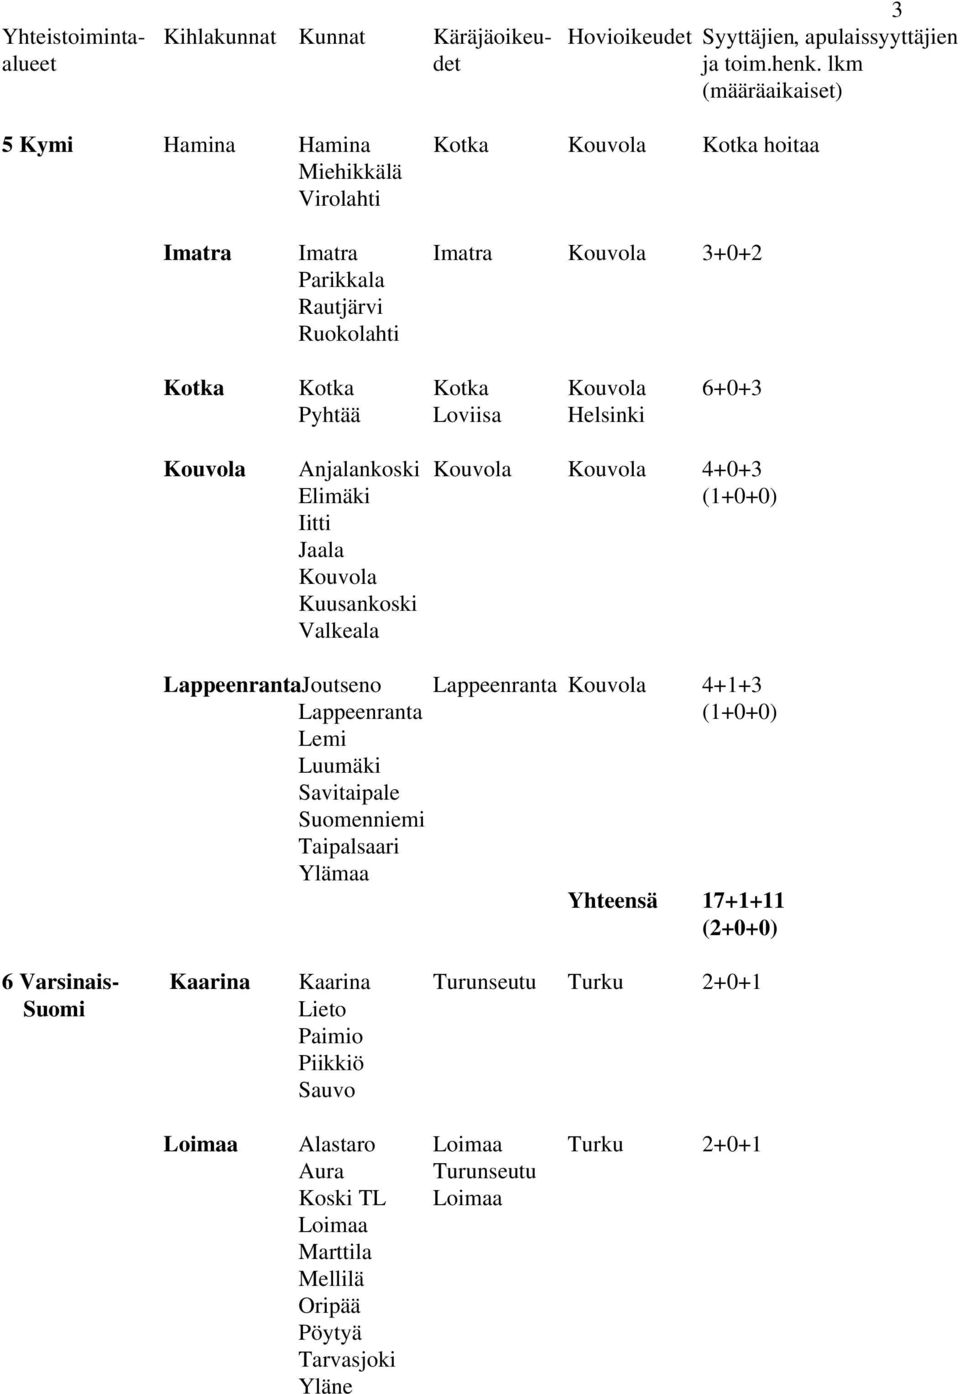 Lappeenranta Kouvola 4+1+3 Lappeenranta (1+0+0) Lemi Luumäki Savitaipale Suomenniemi Taipalsaari Ylämaa Yhteensä 17+1+11 (2+0+0) 6 Varsinais- Kaarina Kaarina